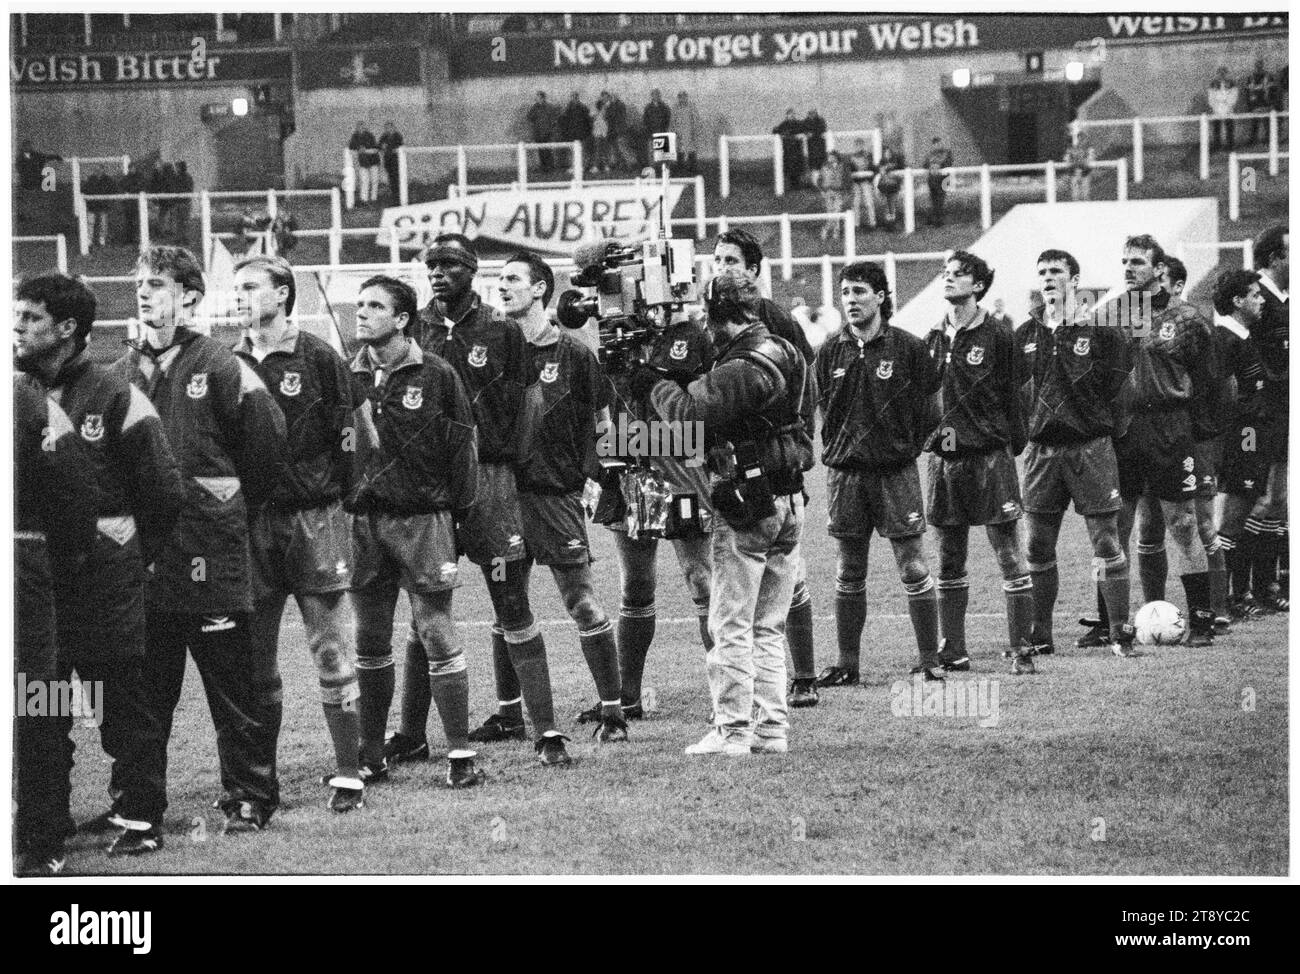 Toute la ligne Welsh Squad pour les hymnes au départ. Coupe du monde de la FIFA 1994 qualification Groupe 4 – pays de Galles contre Roumanie au Cardiff Arms Park, pays de Galles, Royaume-Uni, le 17 novembre 1993. Une victoire pour le pays de Galles dans ce dernier match de groupe confirmerait la qualification comme seul représentant du Royaume-Uni. À 64 minutes avec le score à 1-1, le pays de Galles a eu un penalty pour prendre la tête, mais le coup de pied spot de Paul Bodin a frappé la barre. Florin Raducioiu a marqué le vainqueur pour la Roumanie en 82 minutes et ils se sont qualifiés à la place. Photo : Rob Watkins Banque D'Images